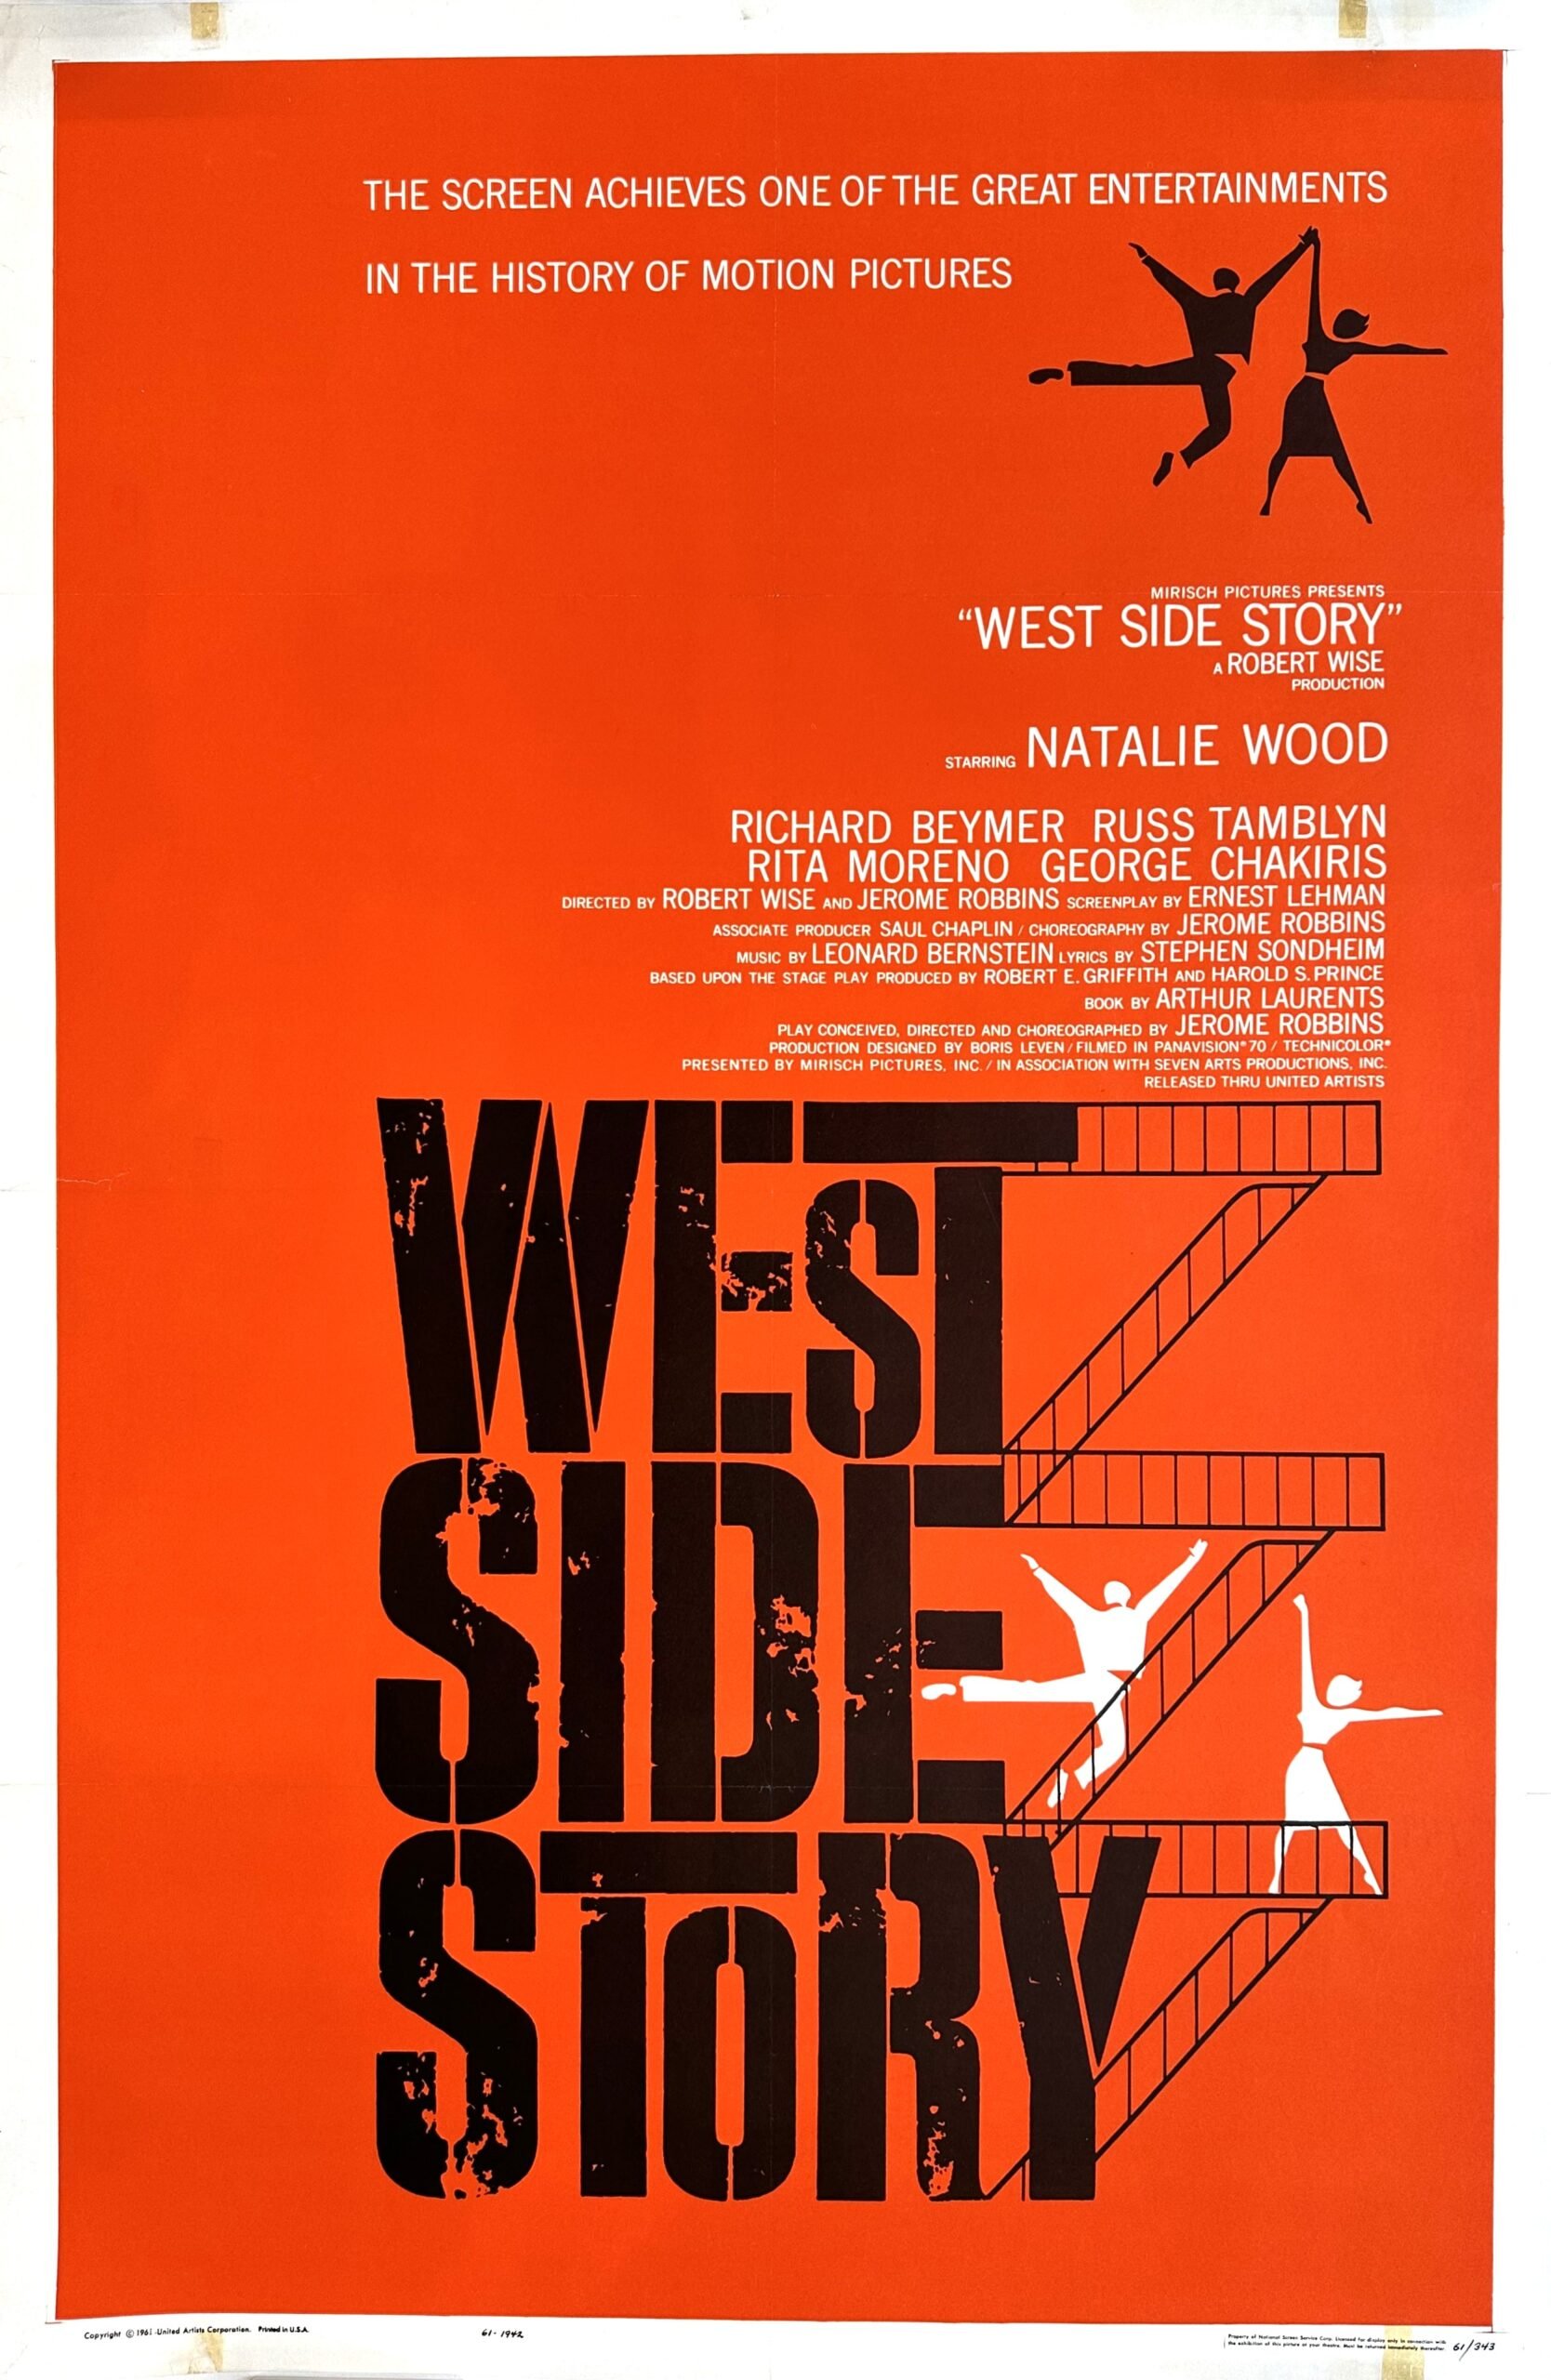 Vintage original US cinema poster for multi-Oscar winning film West Side Story.